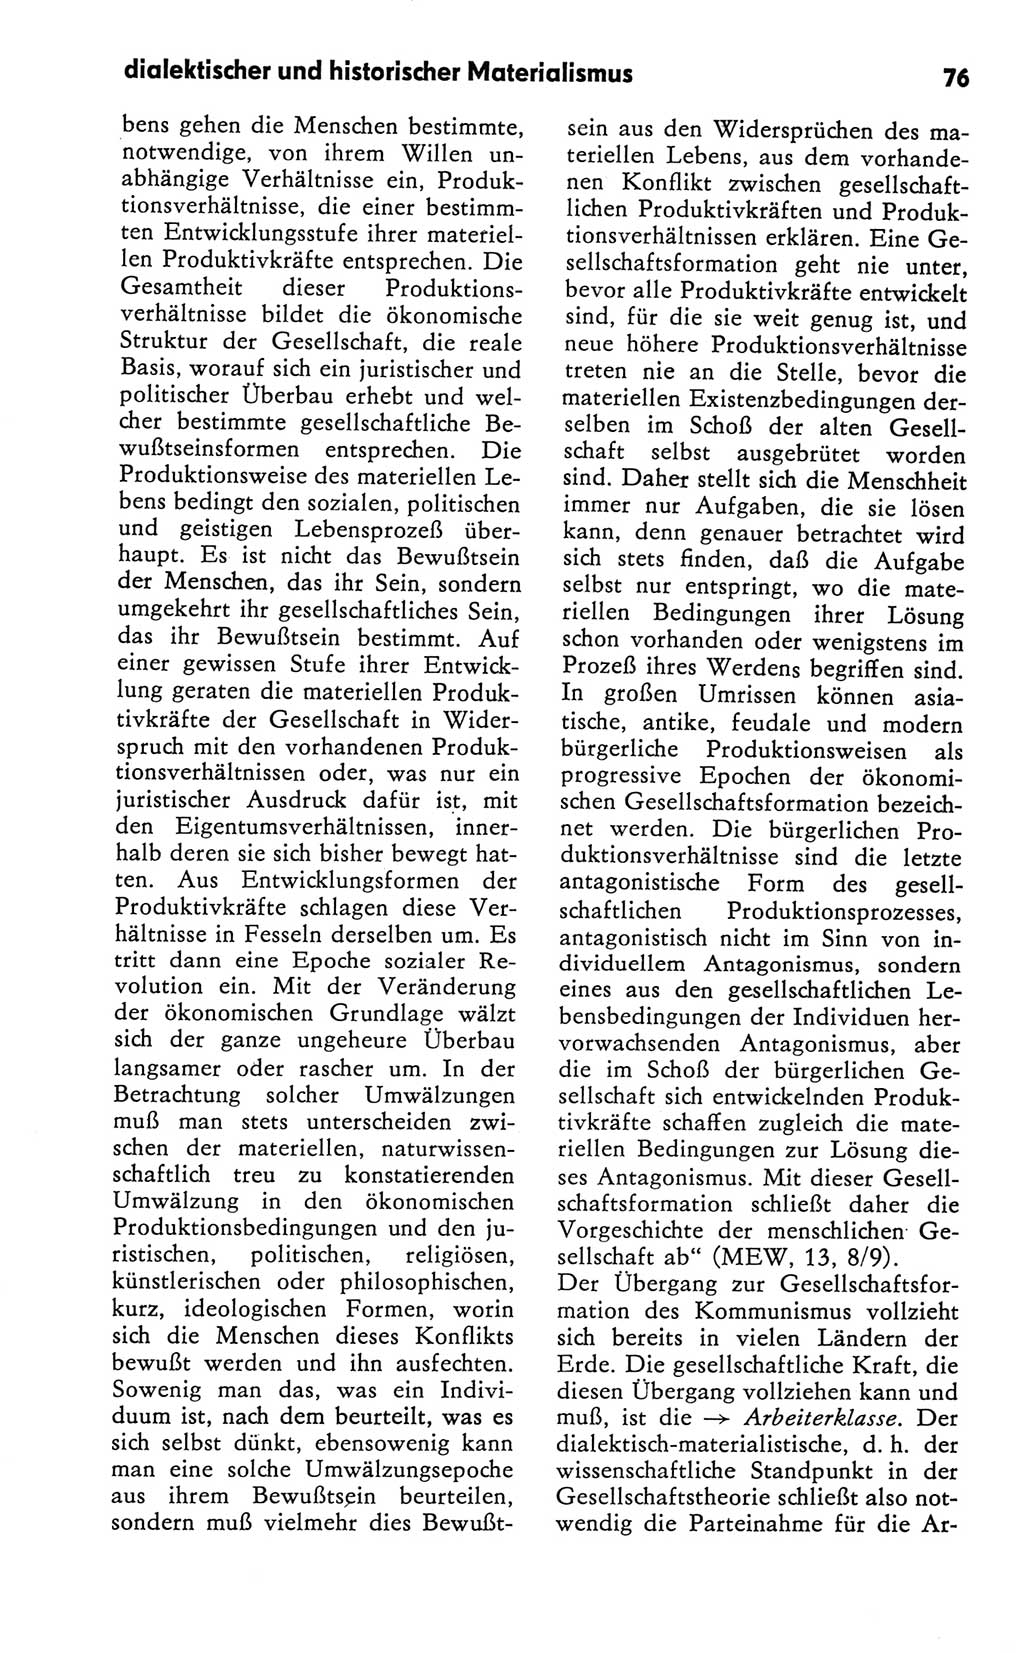 Kleines Wörterbuch der marxistisch-leninistischen Philosophie [Deutsche Demokratische Republik (DDR)] 1981, Seite 76 (Kl. Wb. ML Phil. DDR 1981, S. 76)